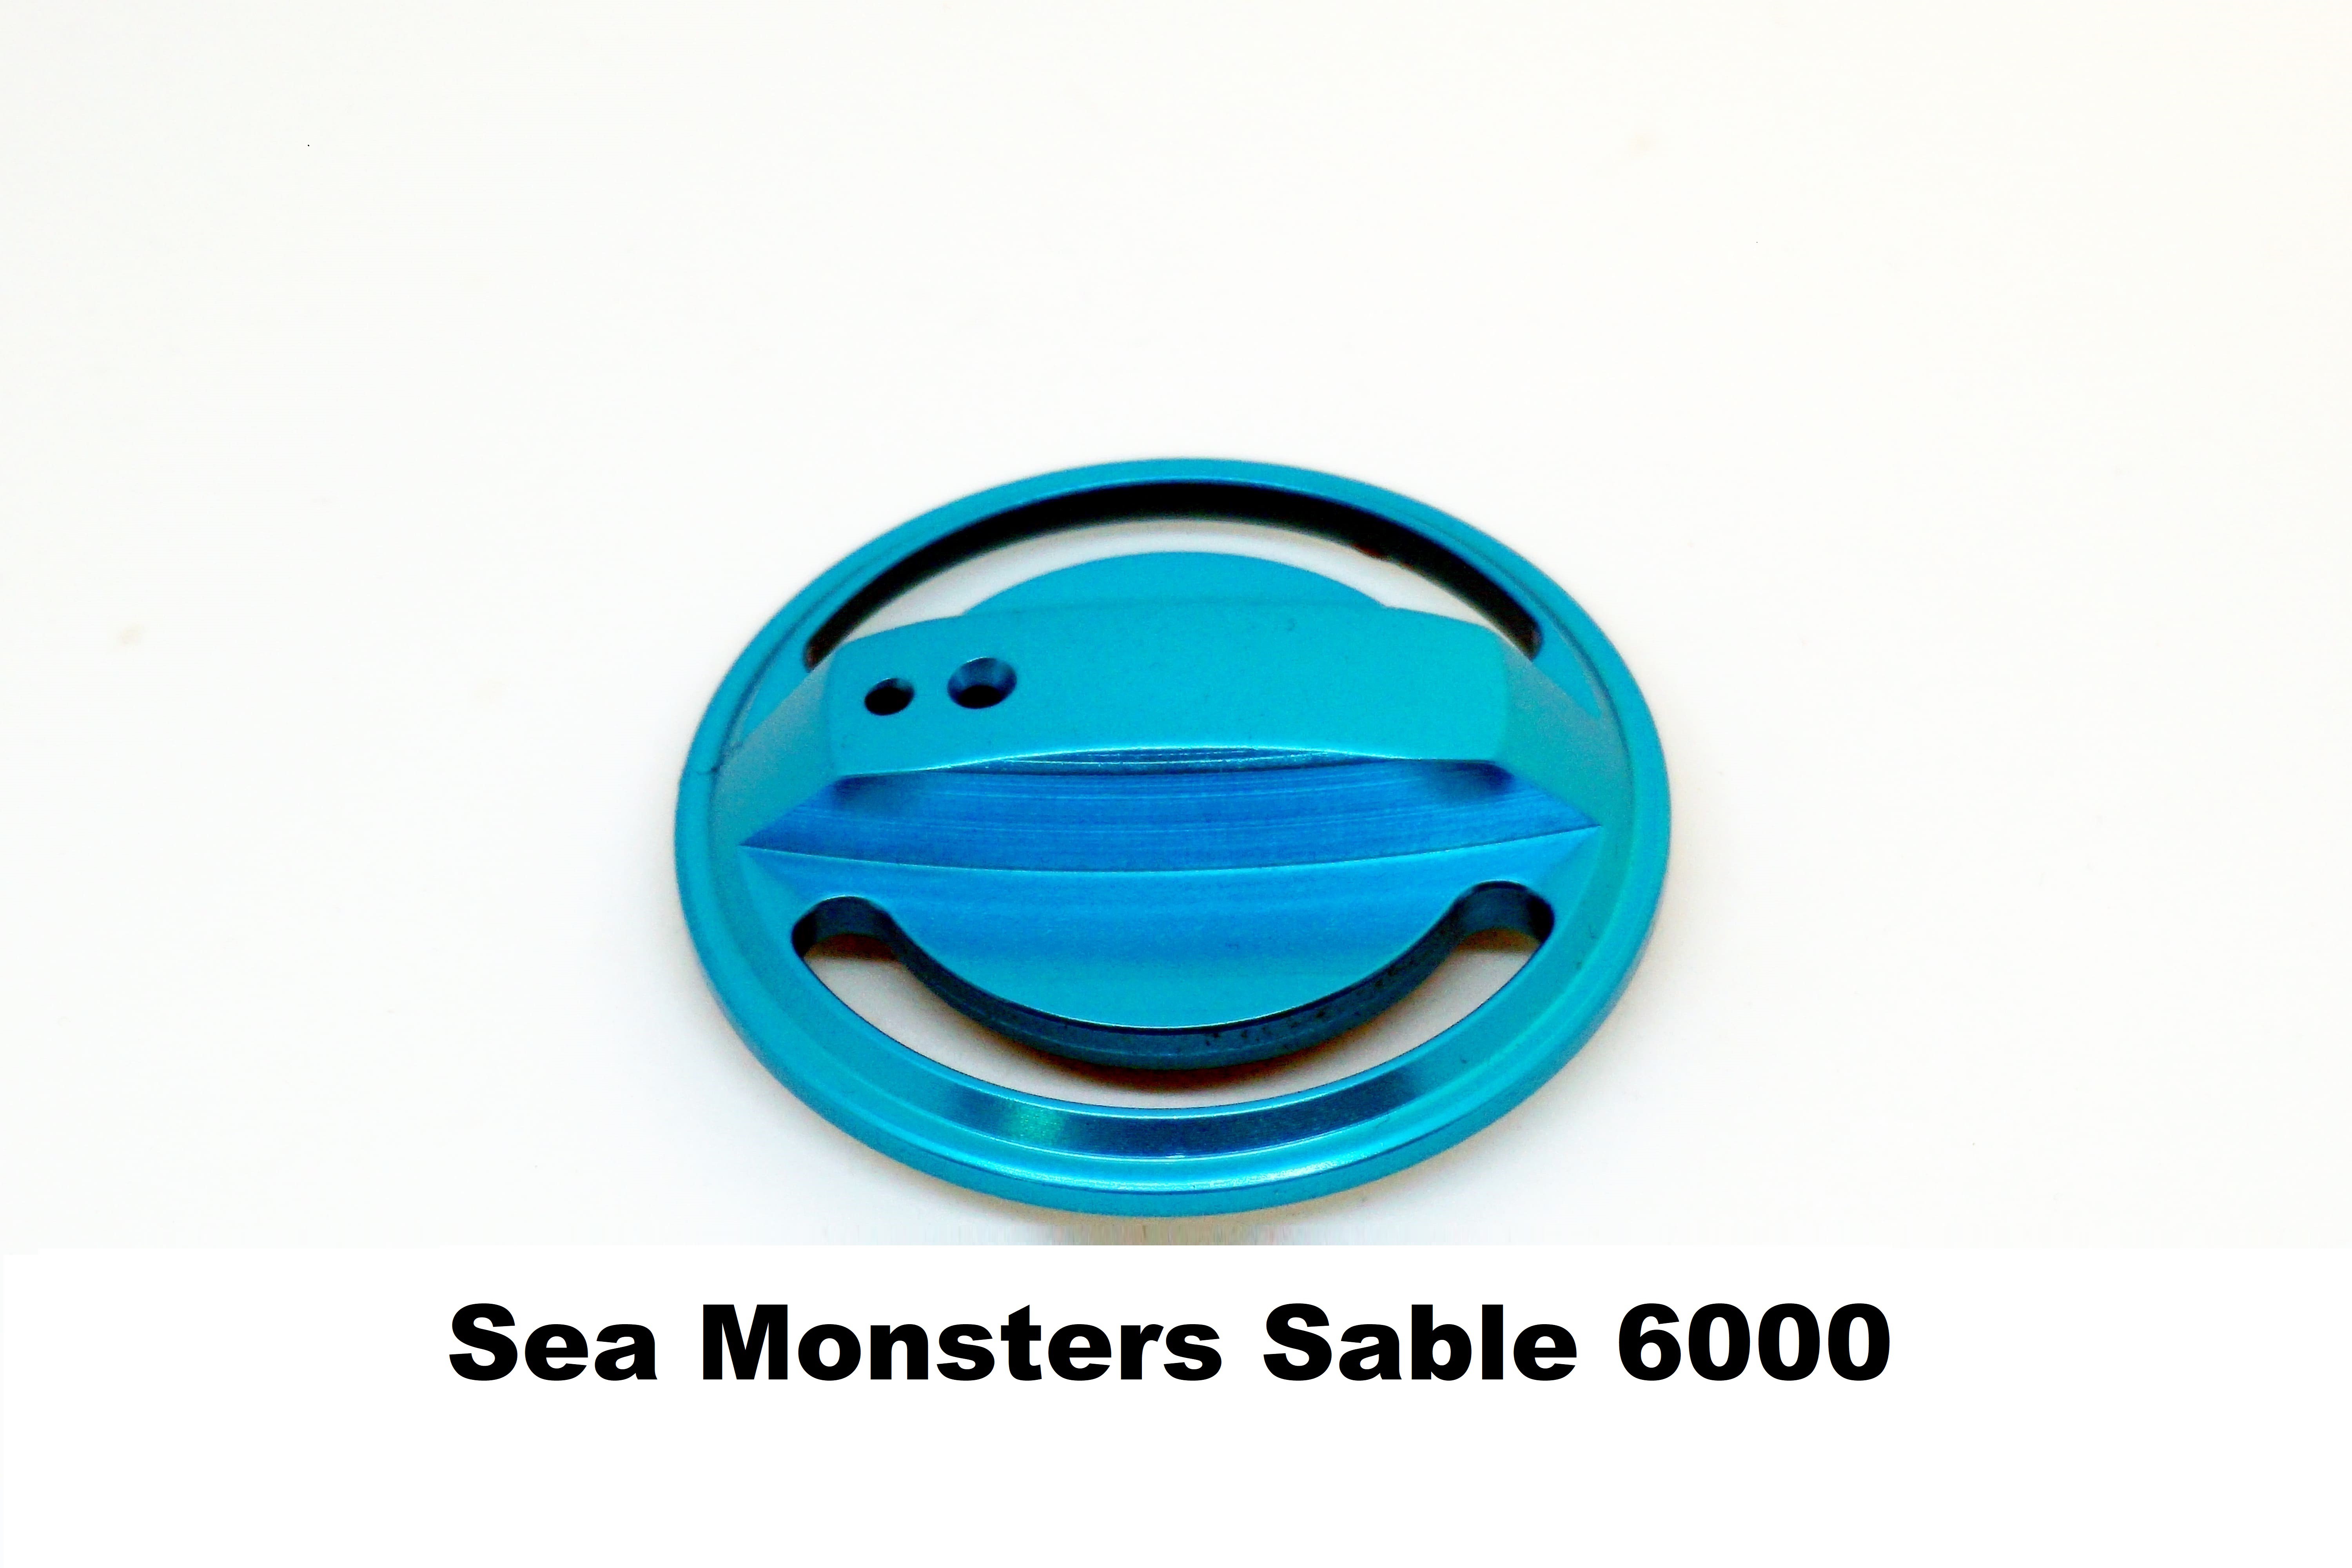 Bouchon de Fren Sea Monsters Sable 6000